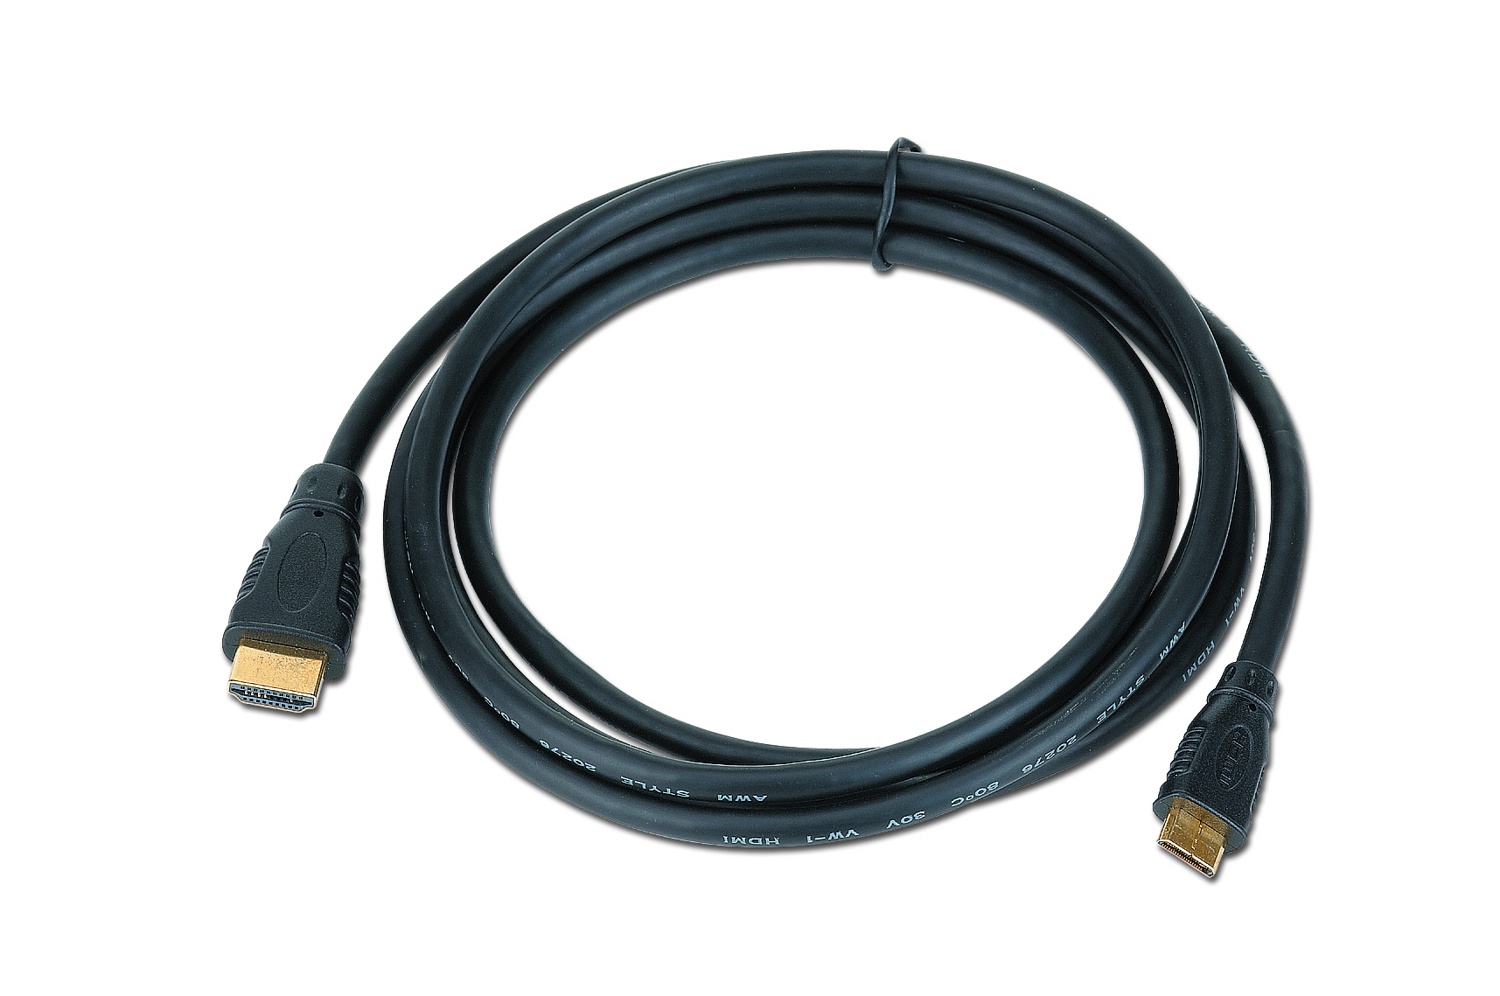 Кабель HDMI - miniHDMI Cablexpert CC-HDMI4C-15 19M/19M, 4.5м, v1.4, 3D, Ethernet, черный, позол.разъемы, экран, пакет